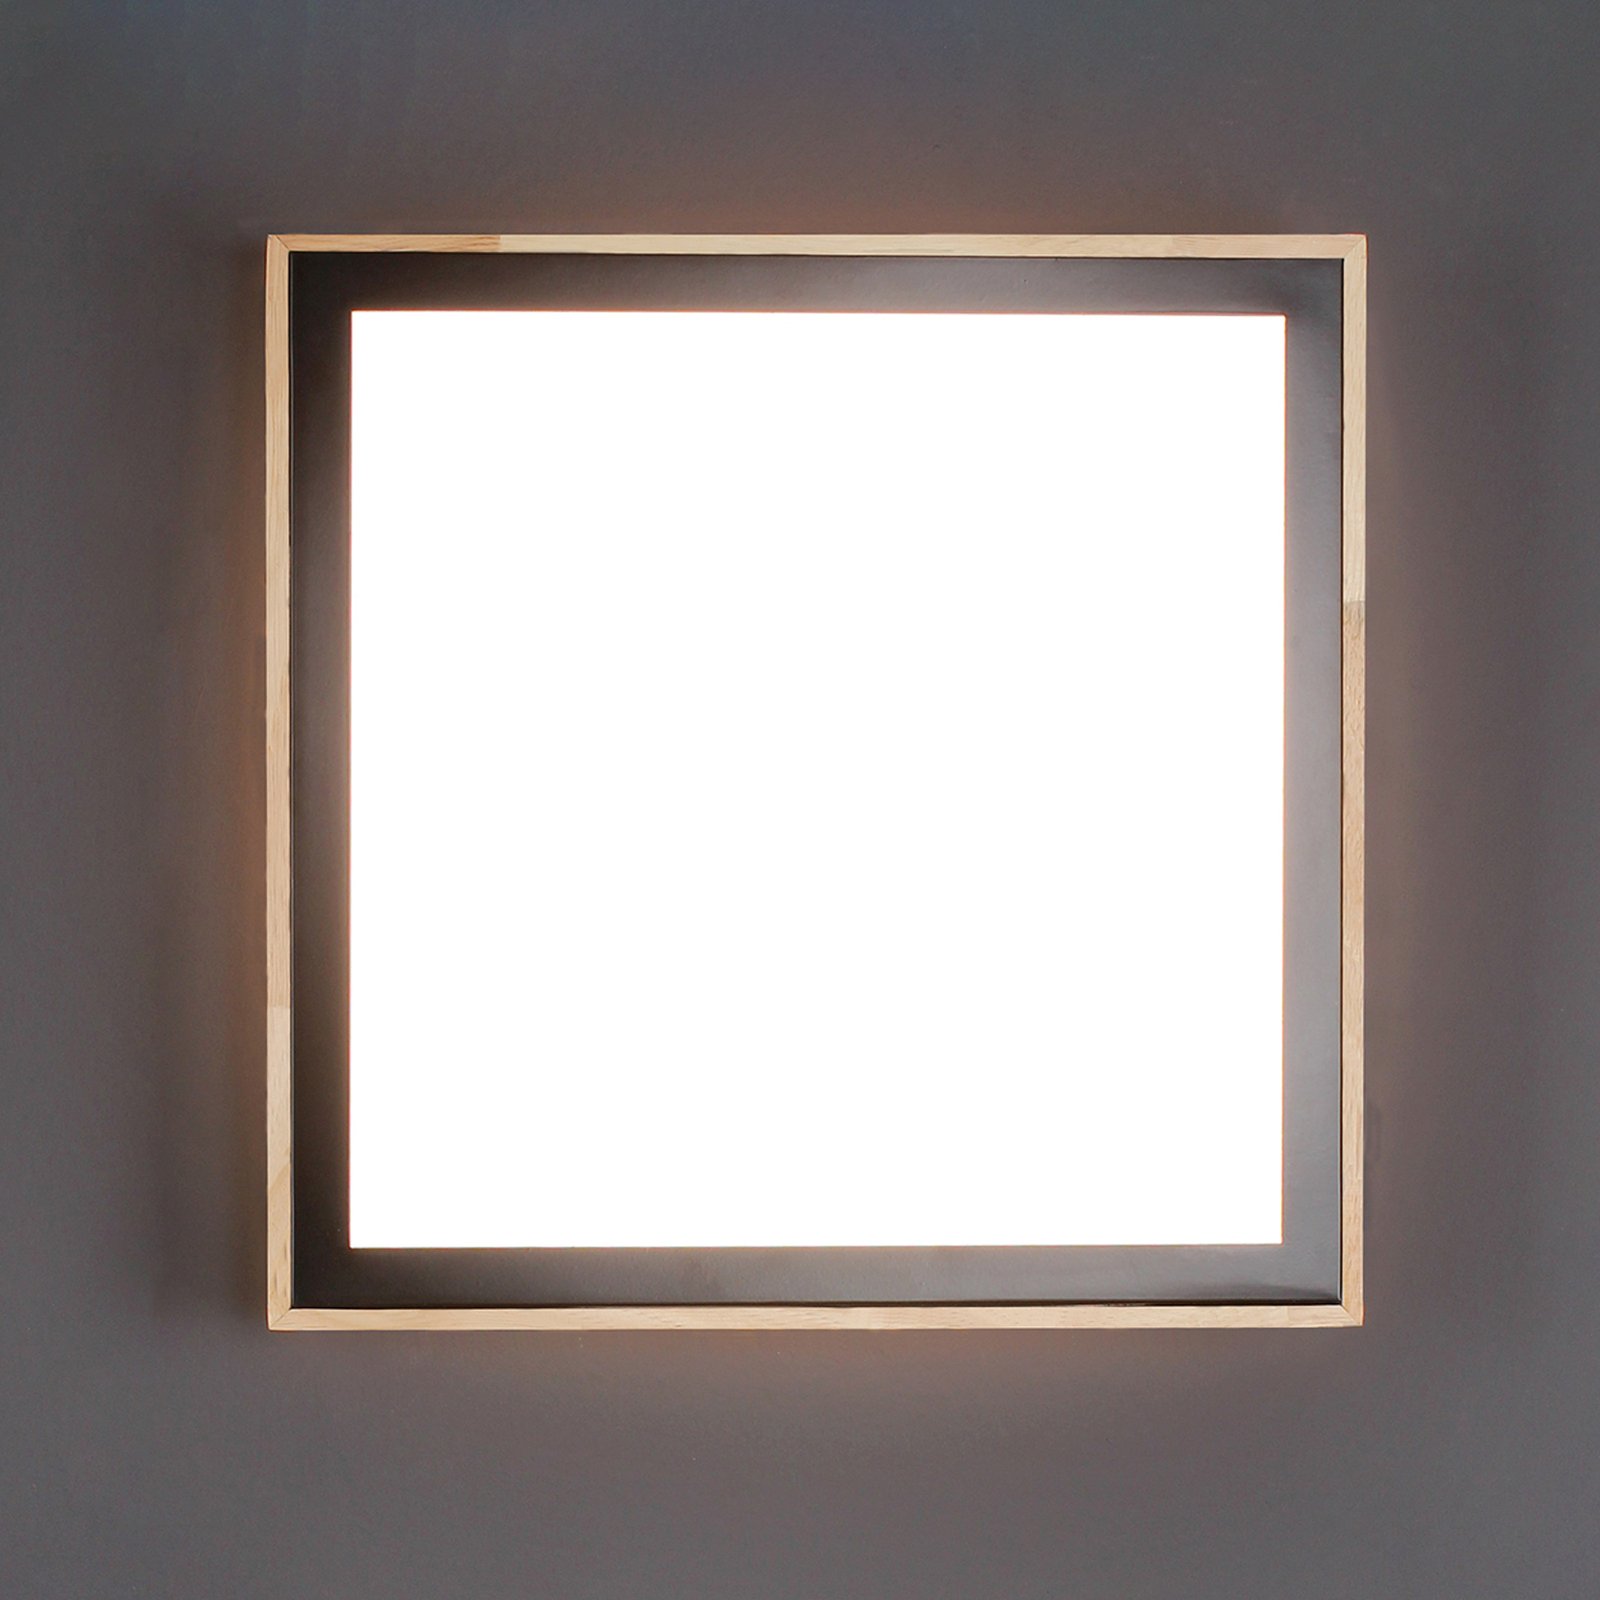 Solstar LED ceiling light, angular 39 x 39 cm